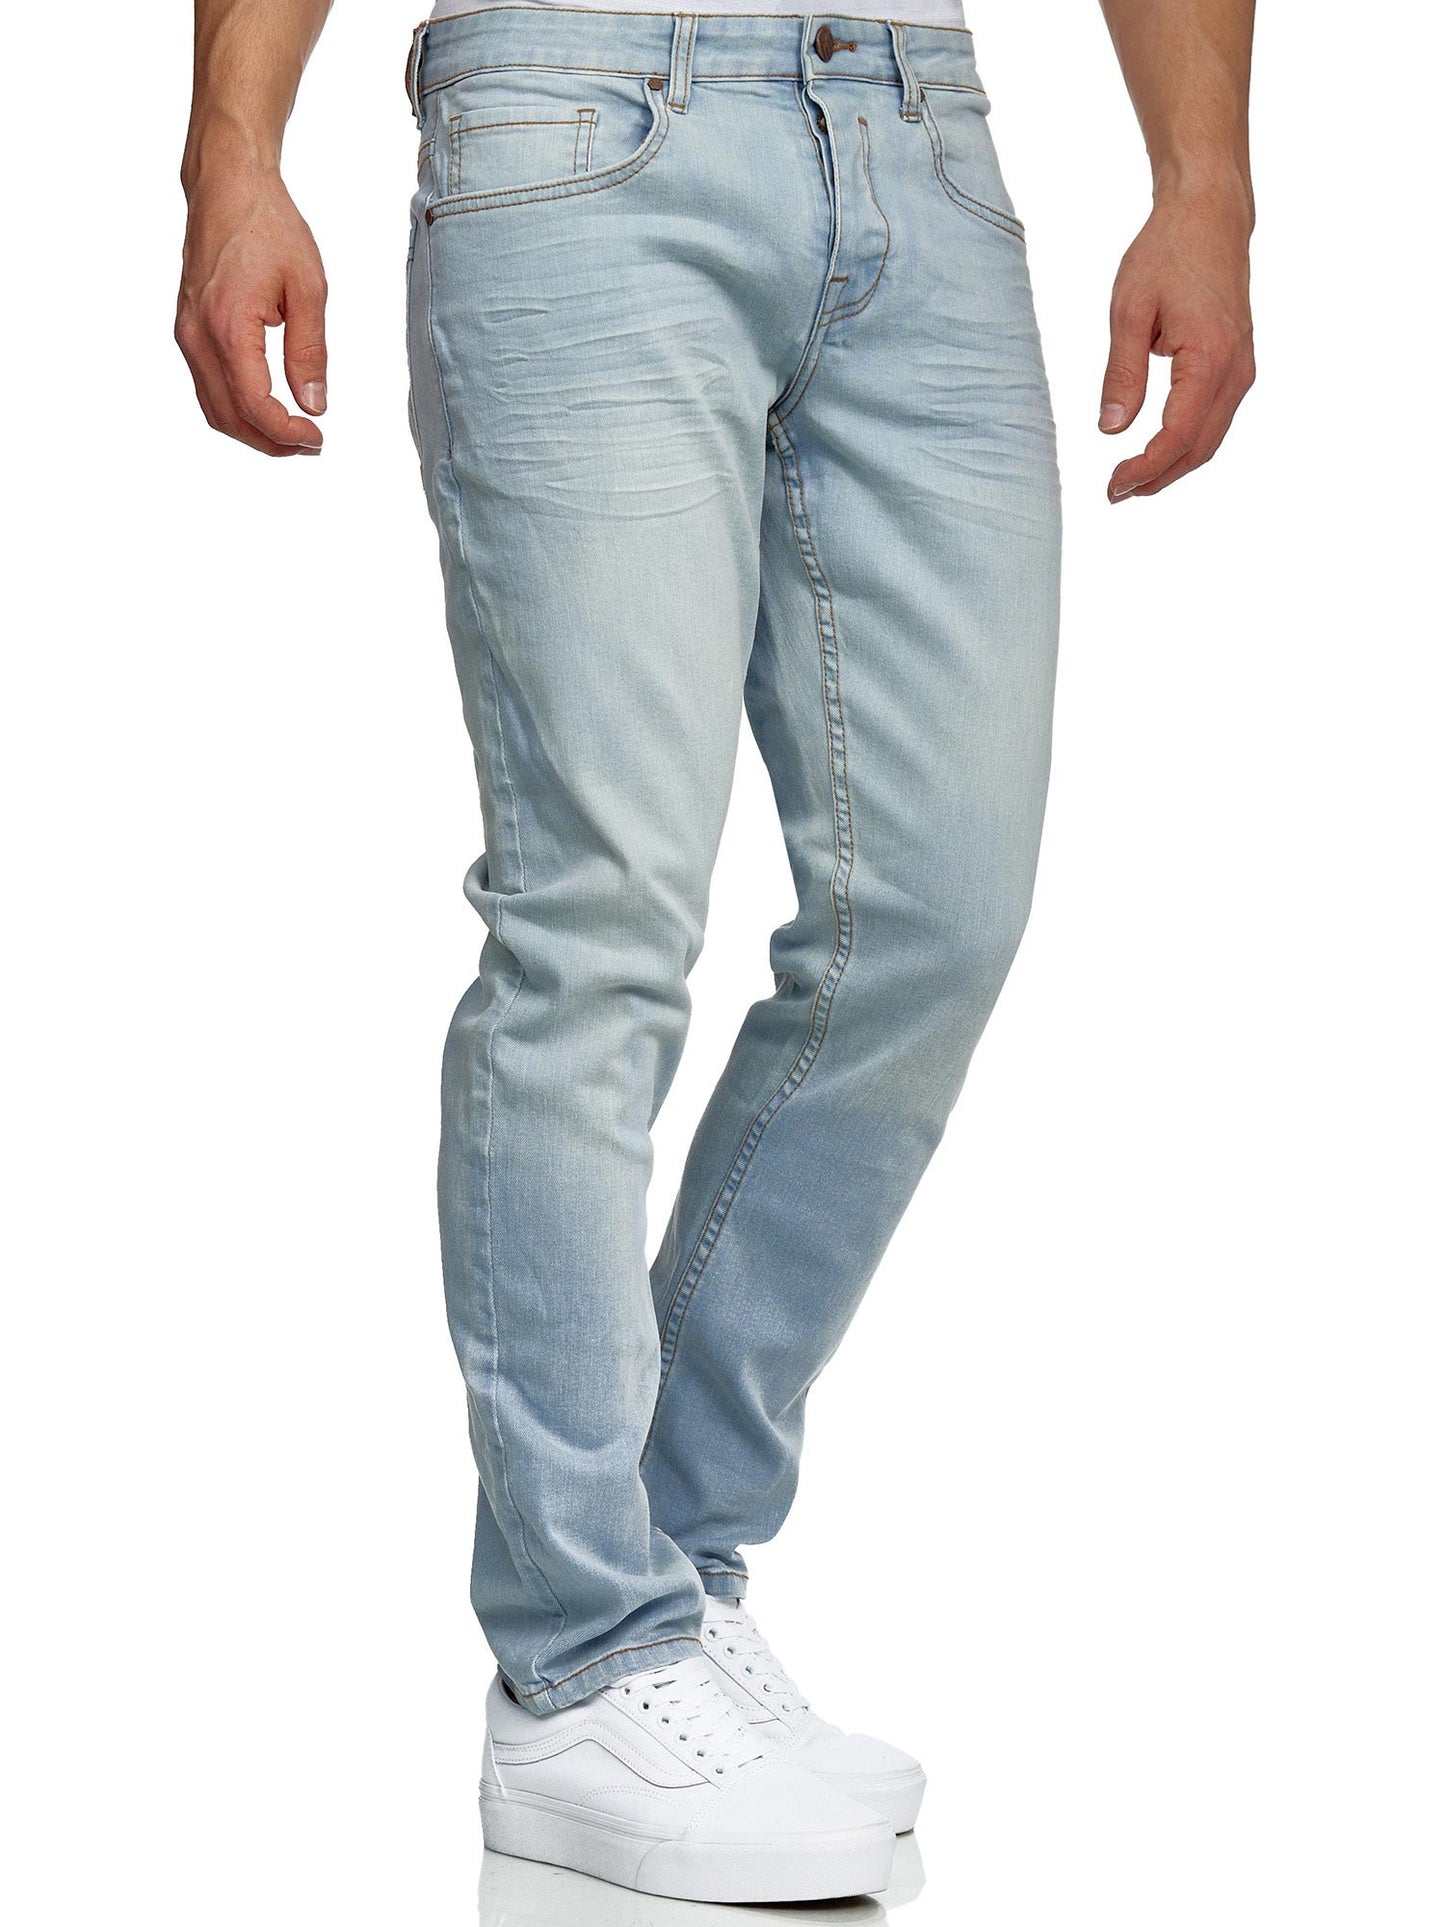 Tazzio Herren Jeans Slim Fit 16533 Hellblau